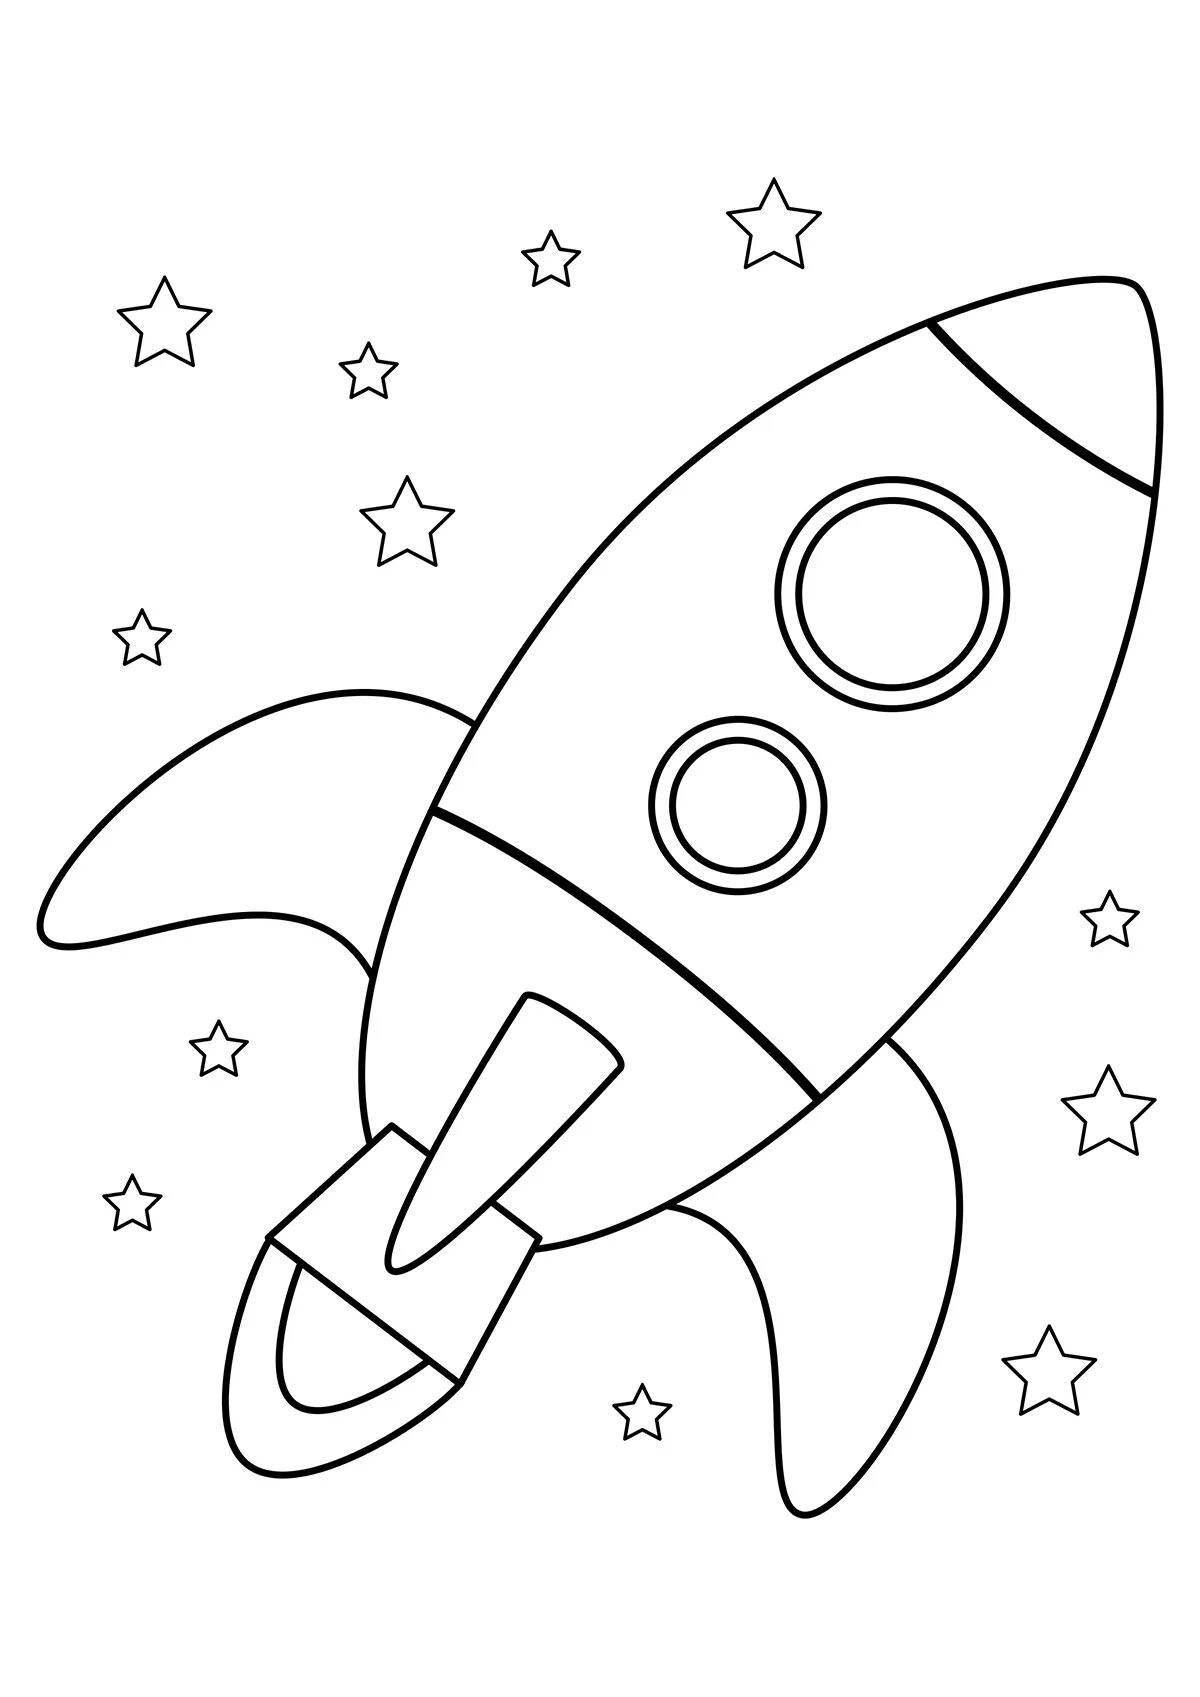 Привлекательная ракета-раскраска для детей 3-4 лет